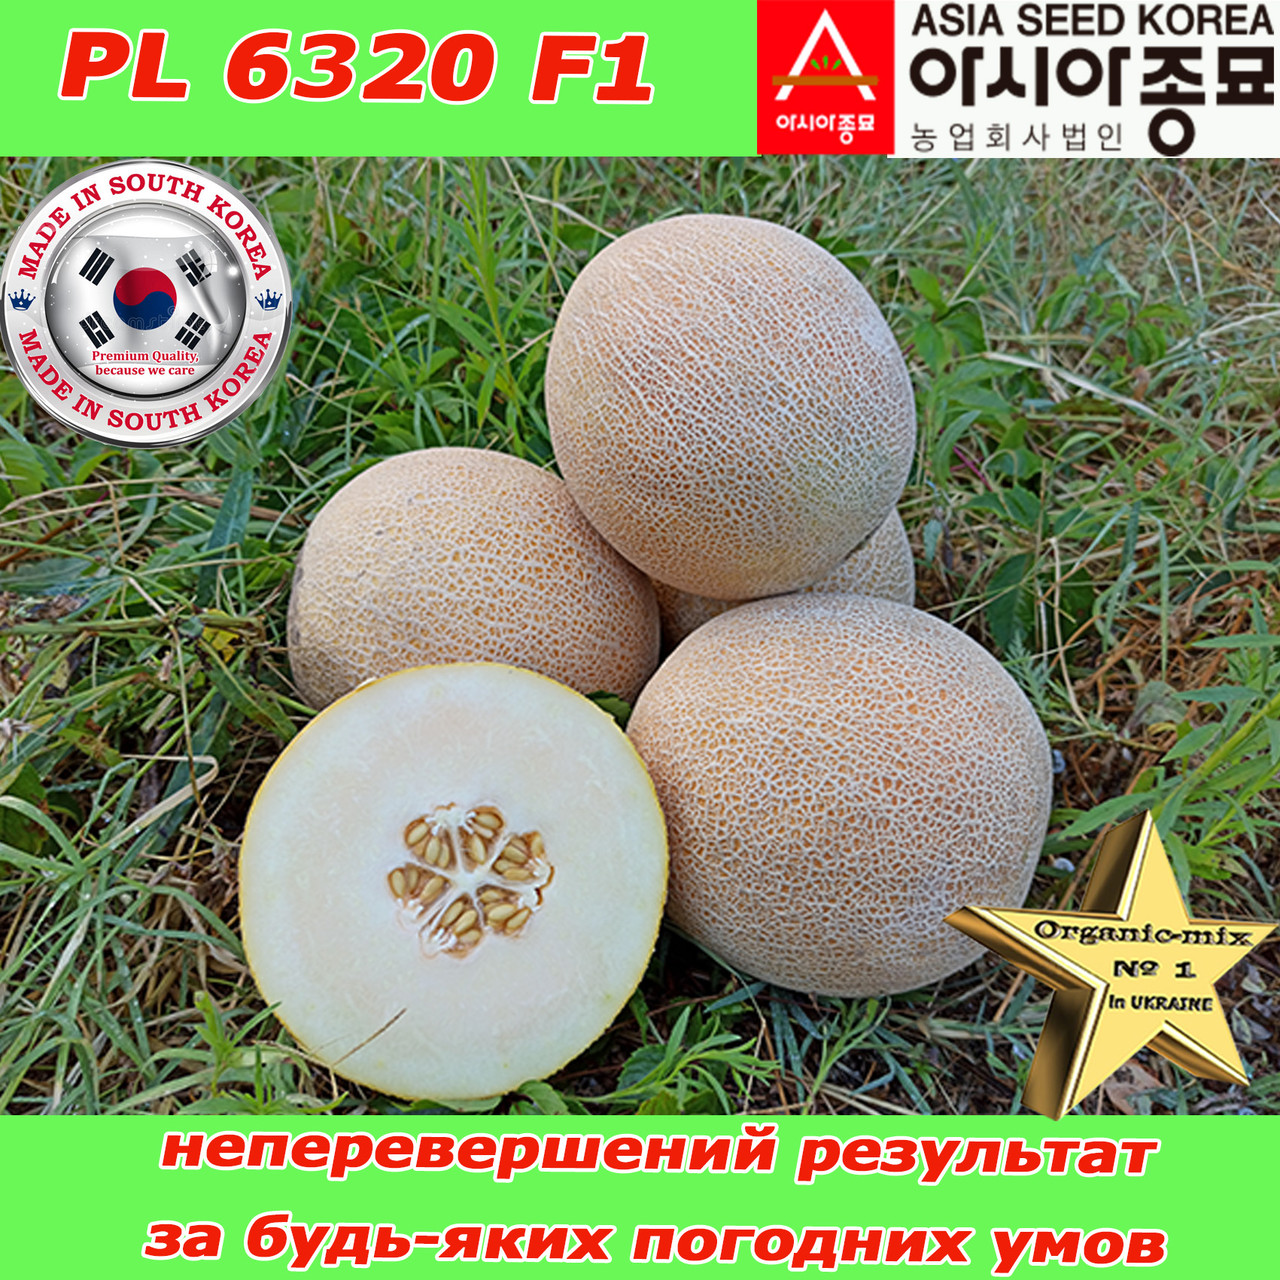 Насіння, диня ультра-рання, цукрова, PL 6320 F1, 500 насінин ТМ Asia Seed (Південна Корея)